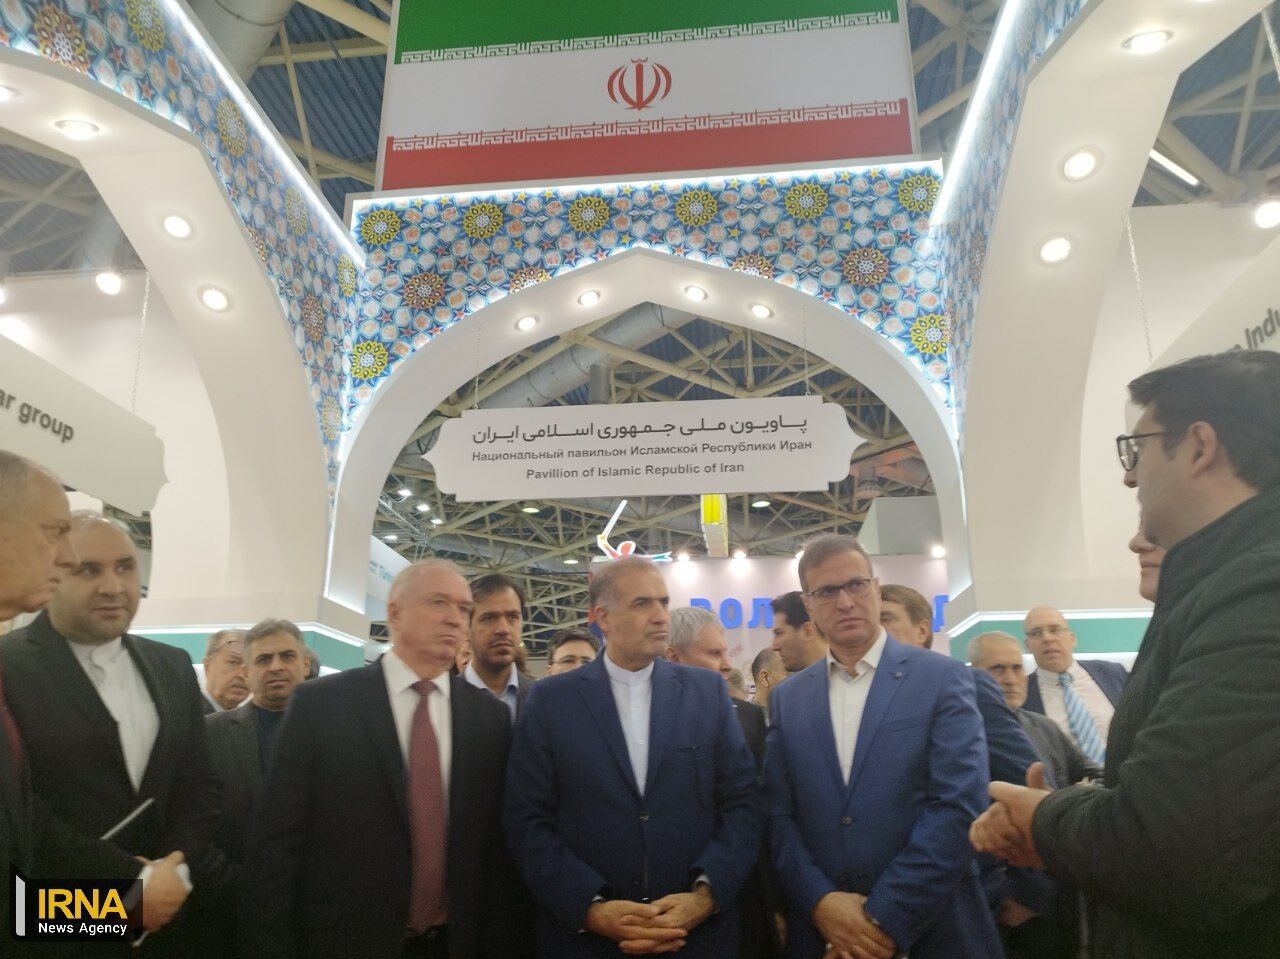 حضور ایران در نمایشگاه برتر مسکو؛ سهم ۴۰ درصدی مواد غذایی در صادرات به روسیه